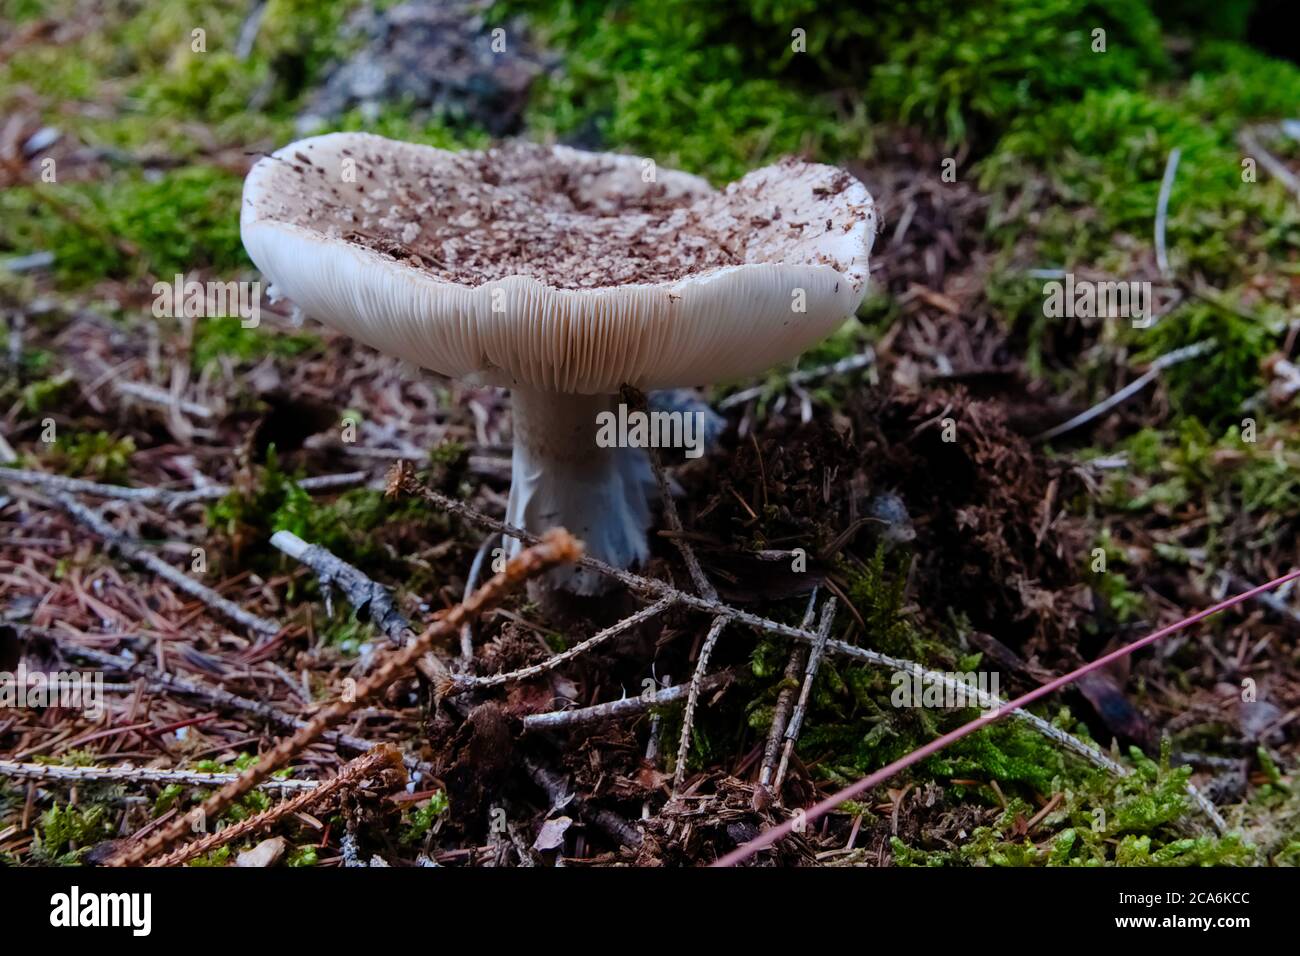 Wild Mushroom bekannt als Busher wächst im trockenen boden des Waldes. Wissenschaftlicher Name Amanita rubescens Stockfoto